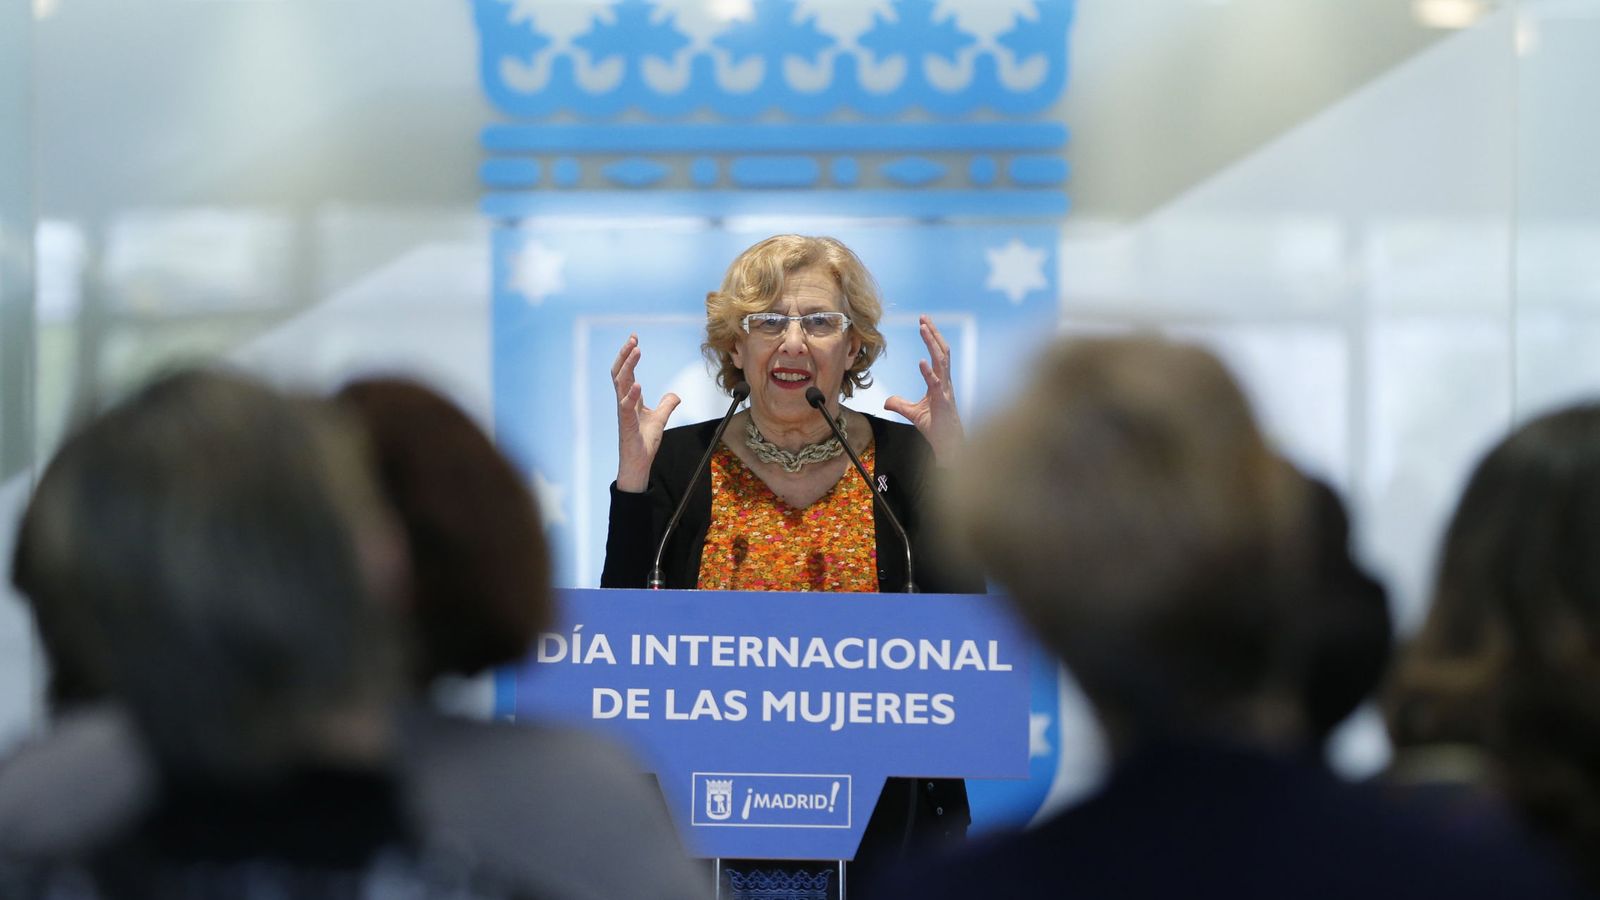 Foto: La alcaldesa de Madrid, Manuela Carmena, durante un acto organizado por el Ayuntamiento. (Efe)